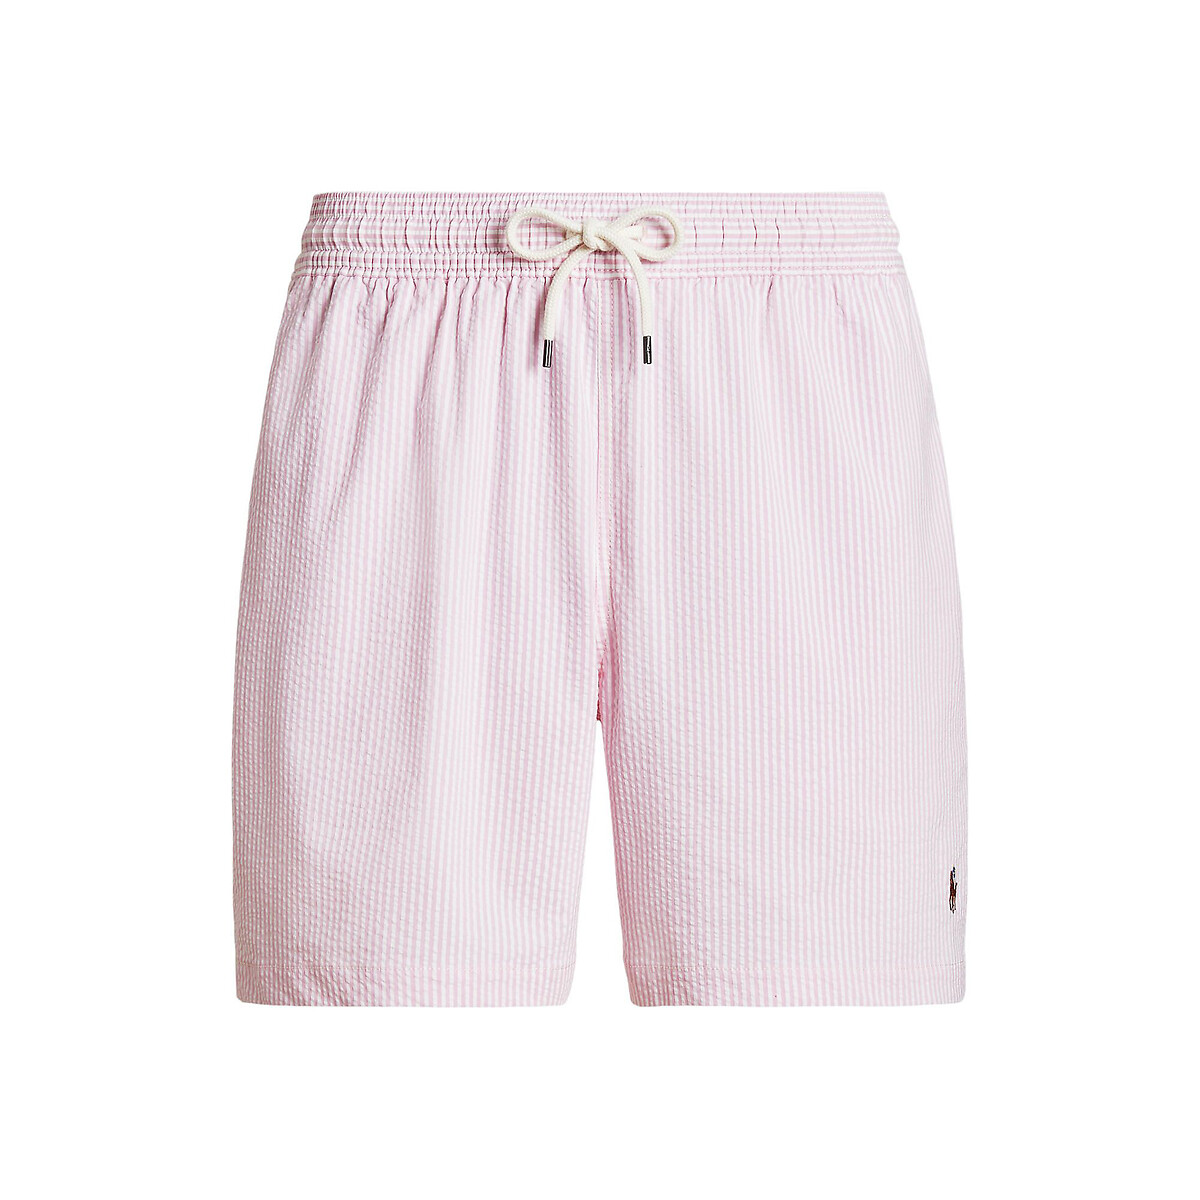 Шорты Пляжные из легкой полосатой ткани с вышитым логотипом M розовый LaRedoute, размер M - фото 4